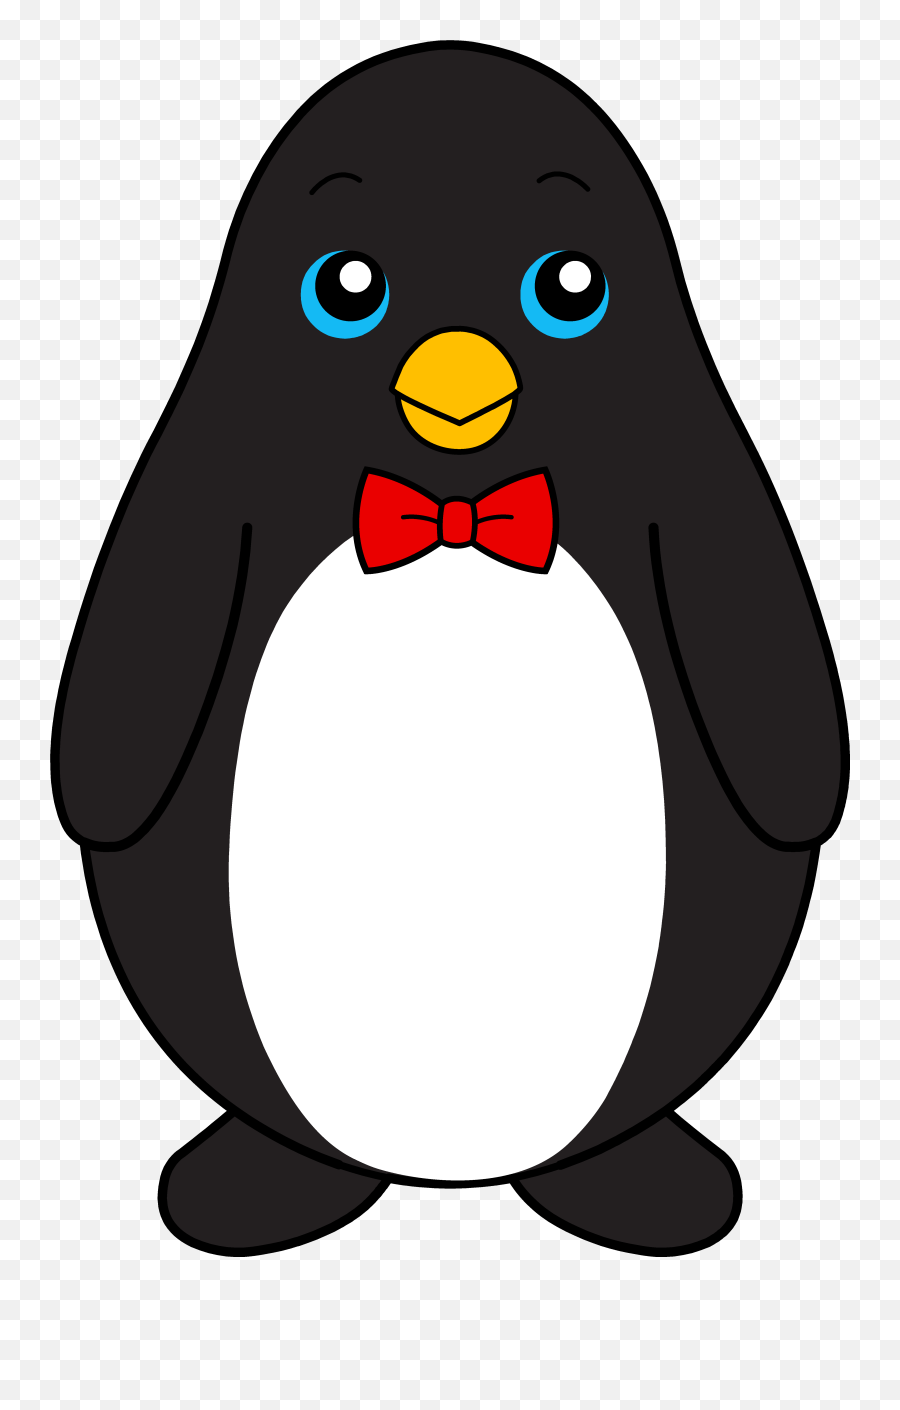 Download - Penguinspngtransparentimagestransparent Png,Red Bow Transparent Background